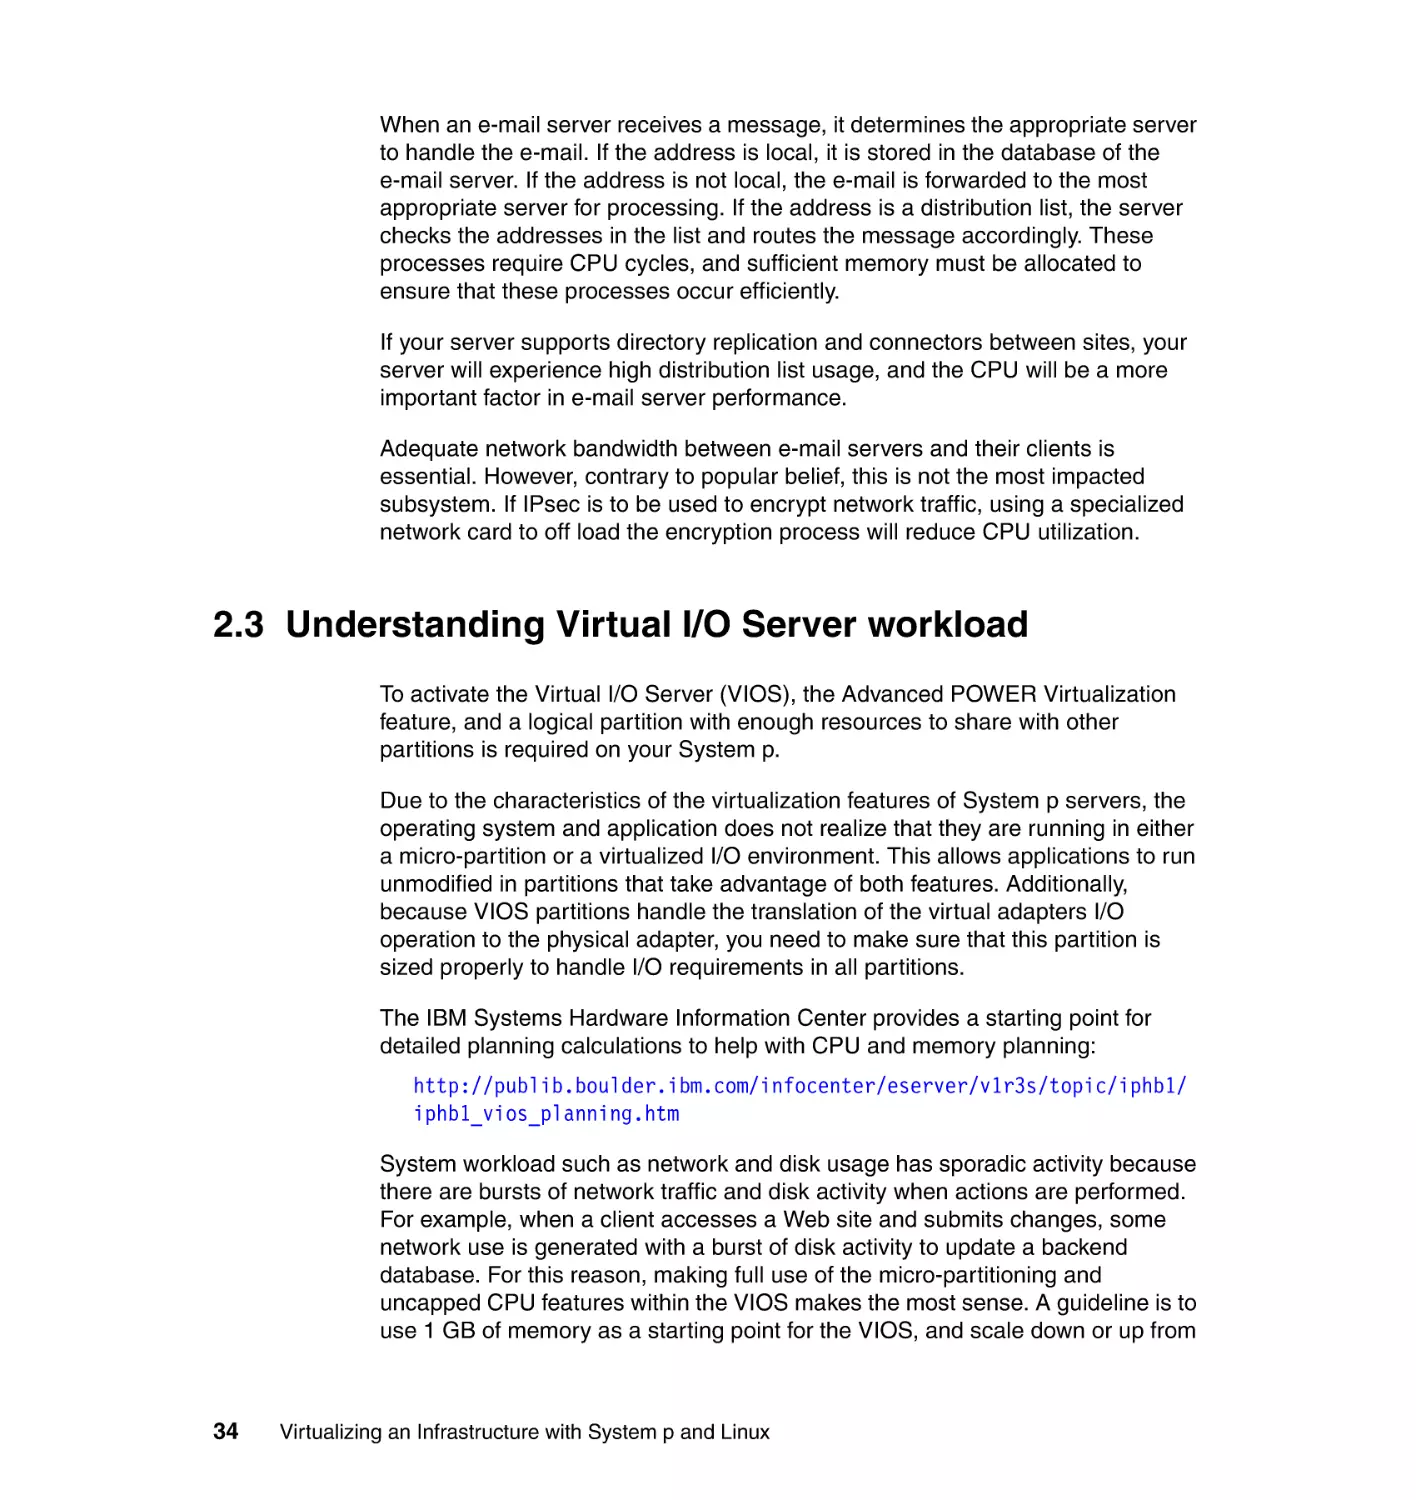 2.3 Understanding Virtual I/O Server workload